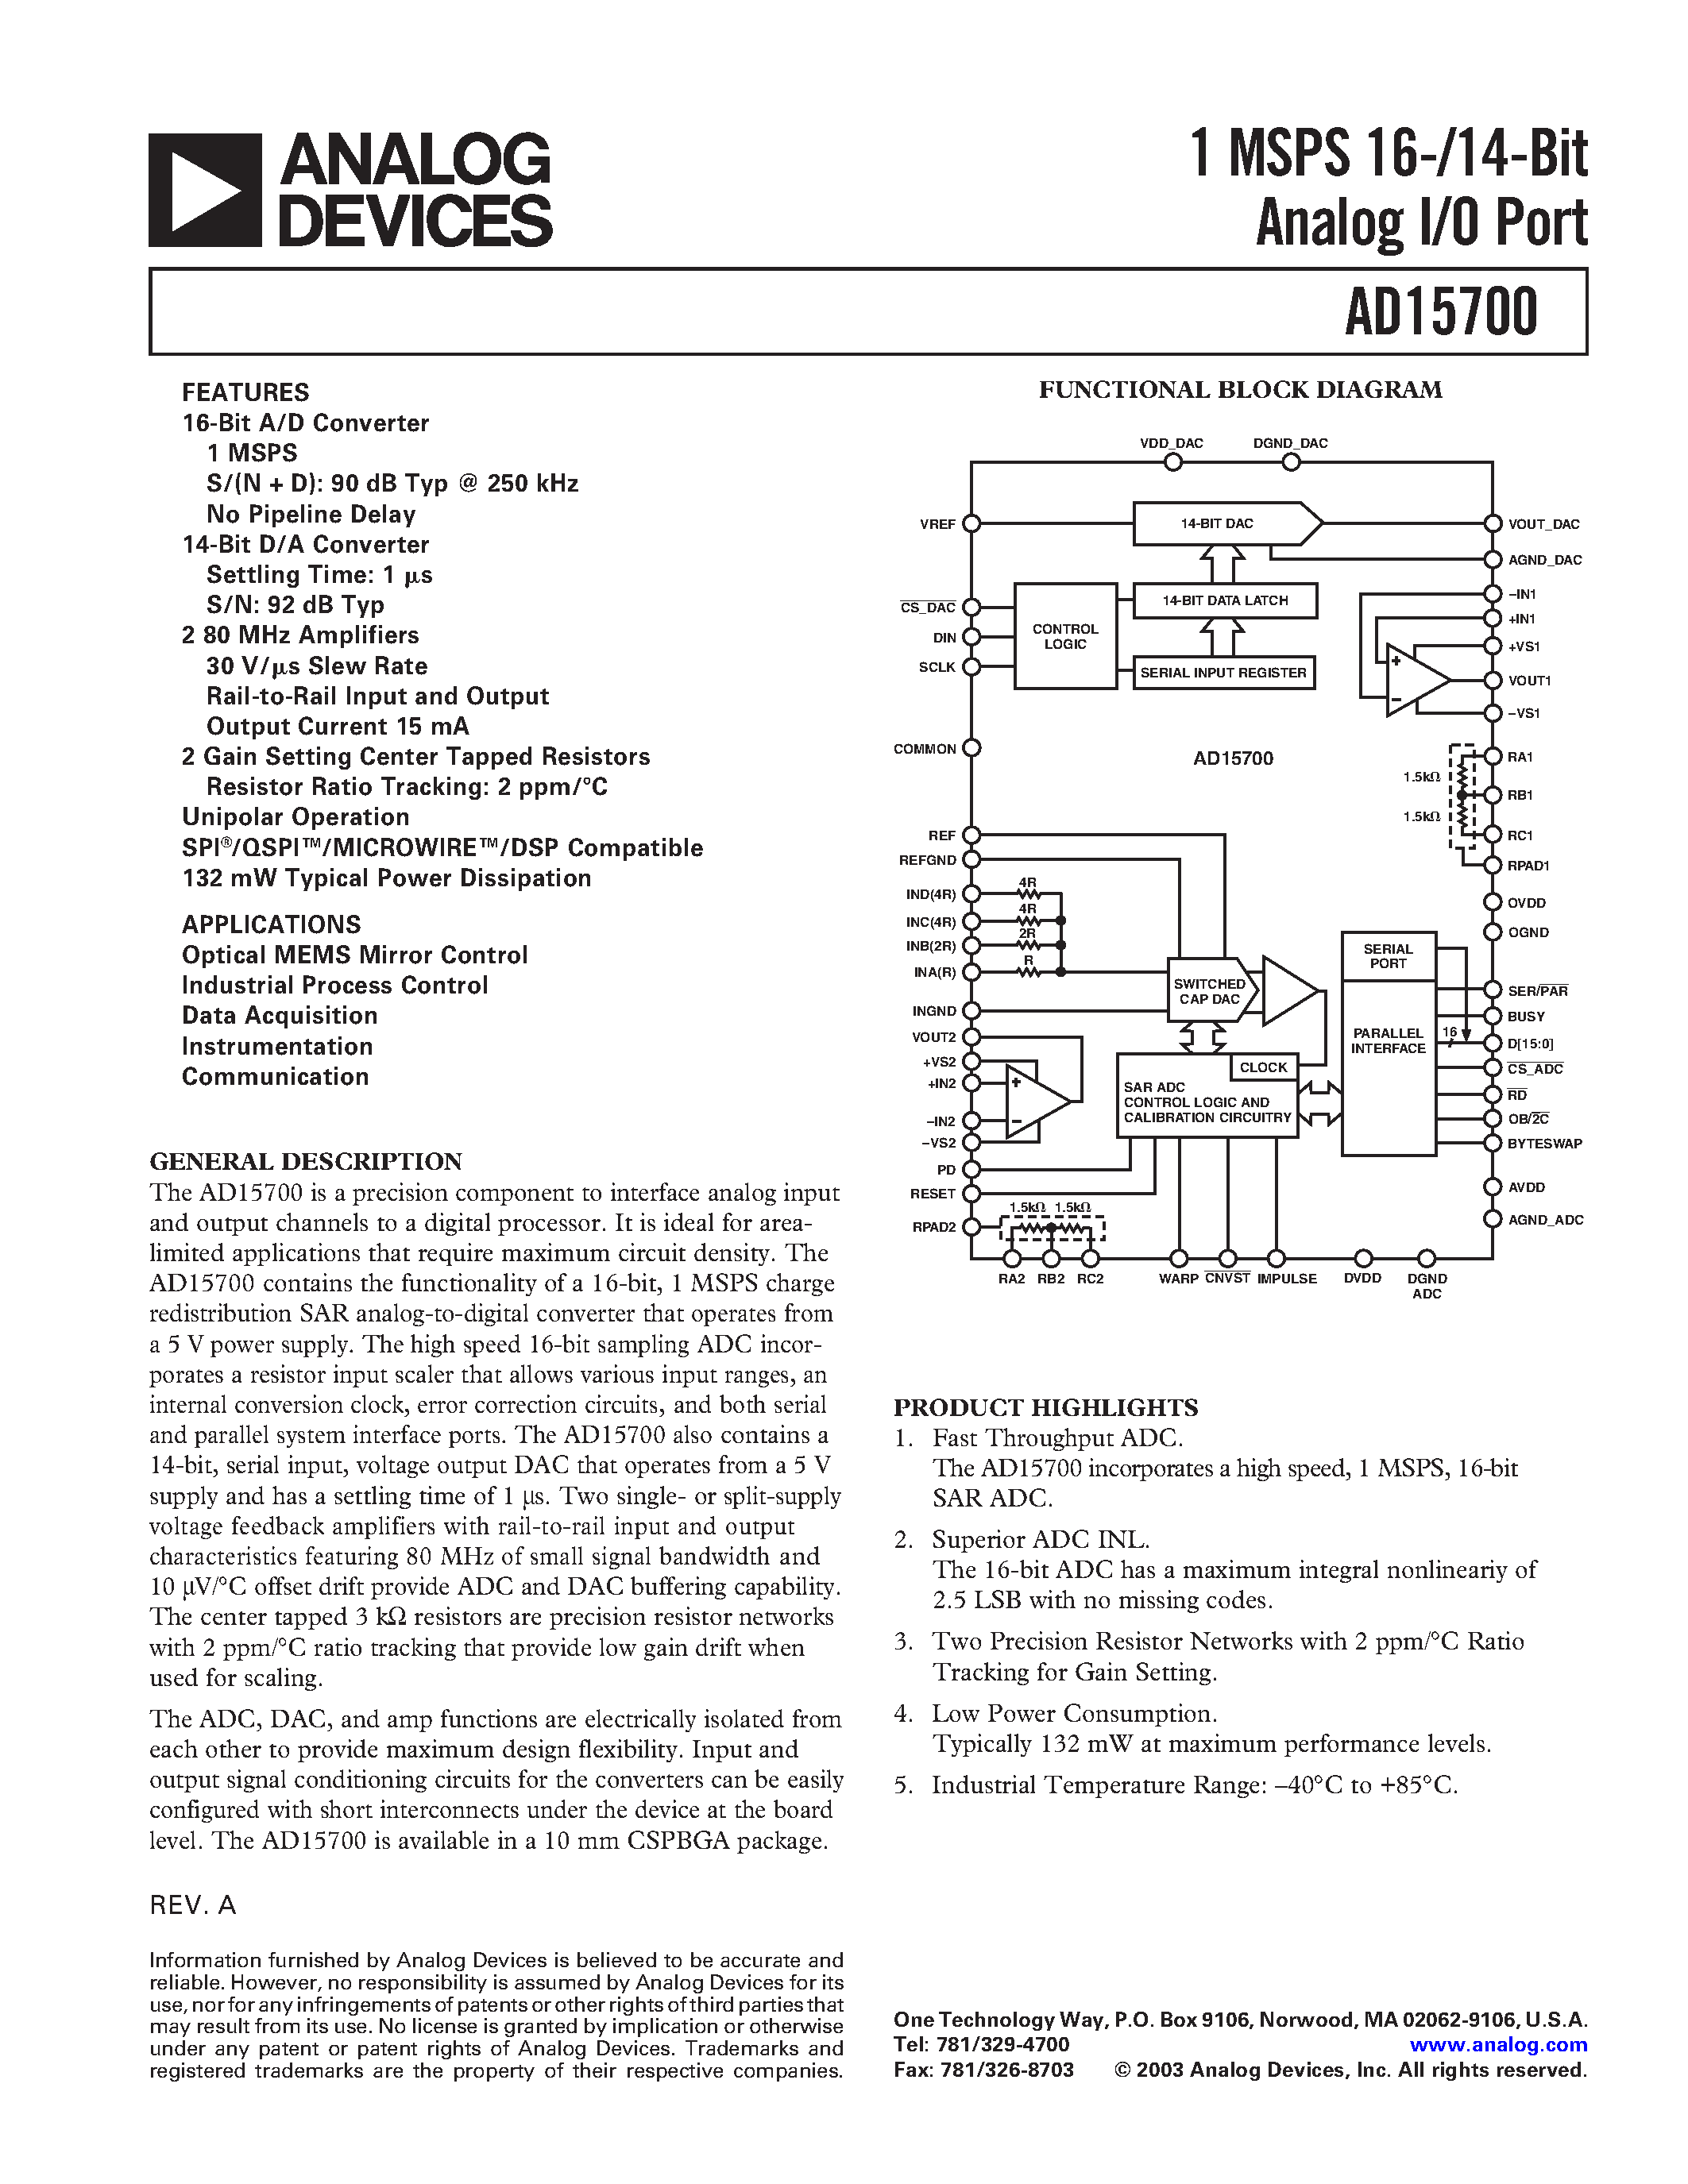 Даташит AD15700/PCB - 1 MSPS 16-/14-Bit Analog I/O Port страница 1